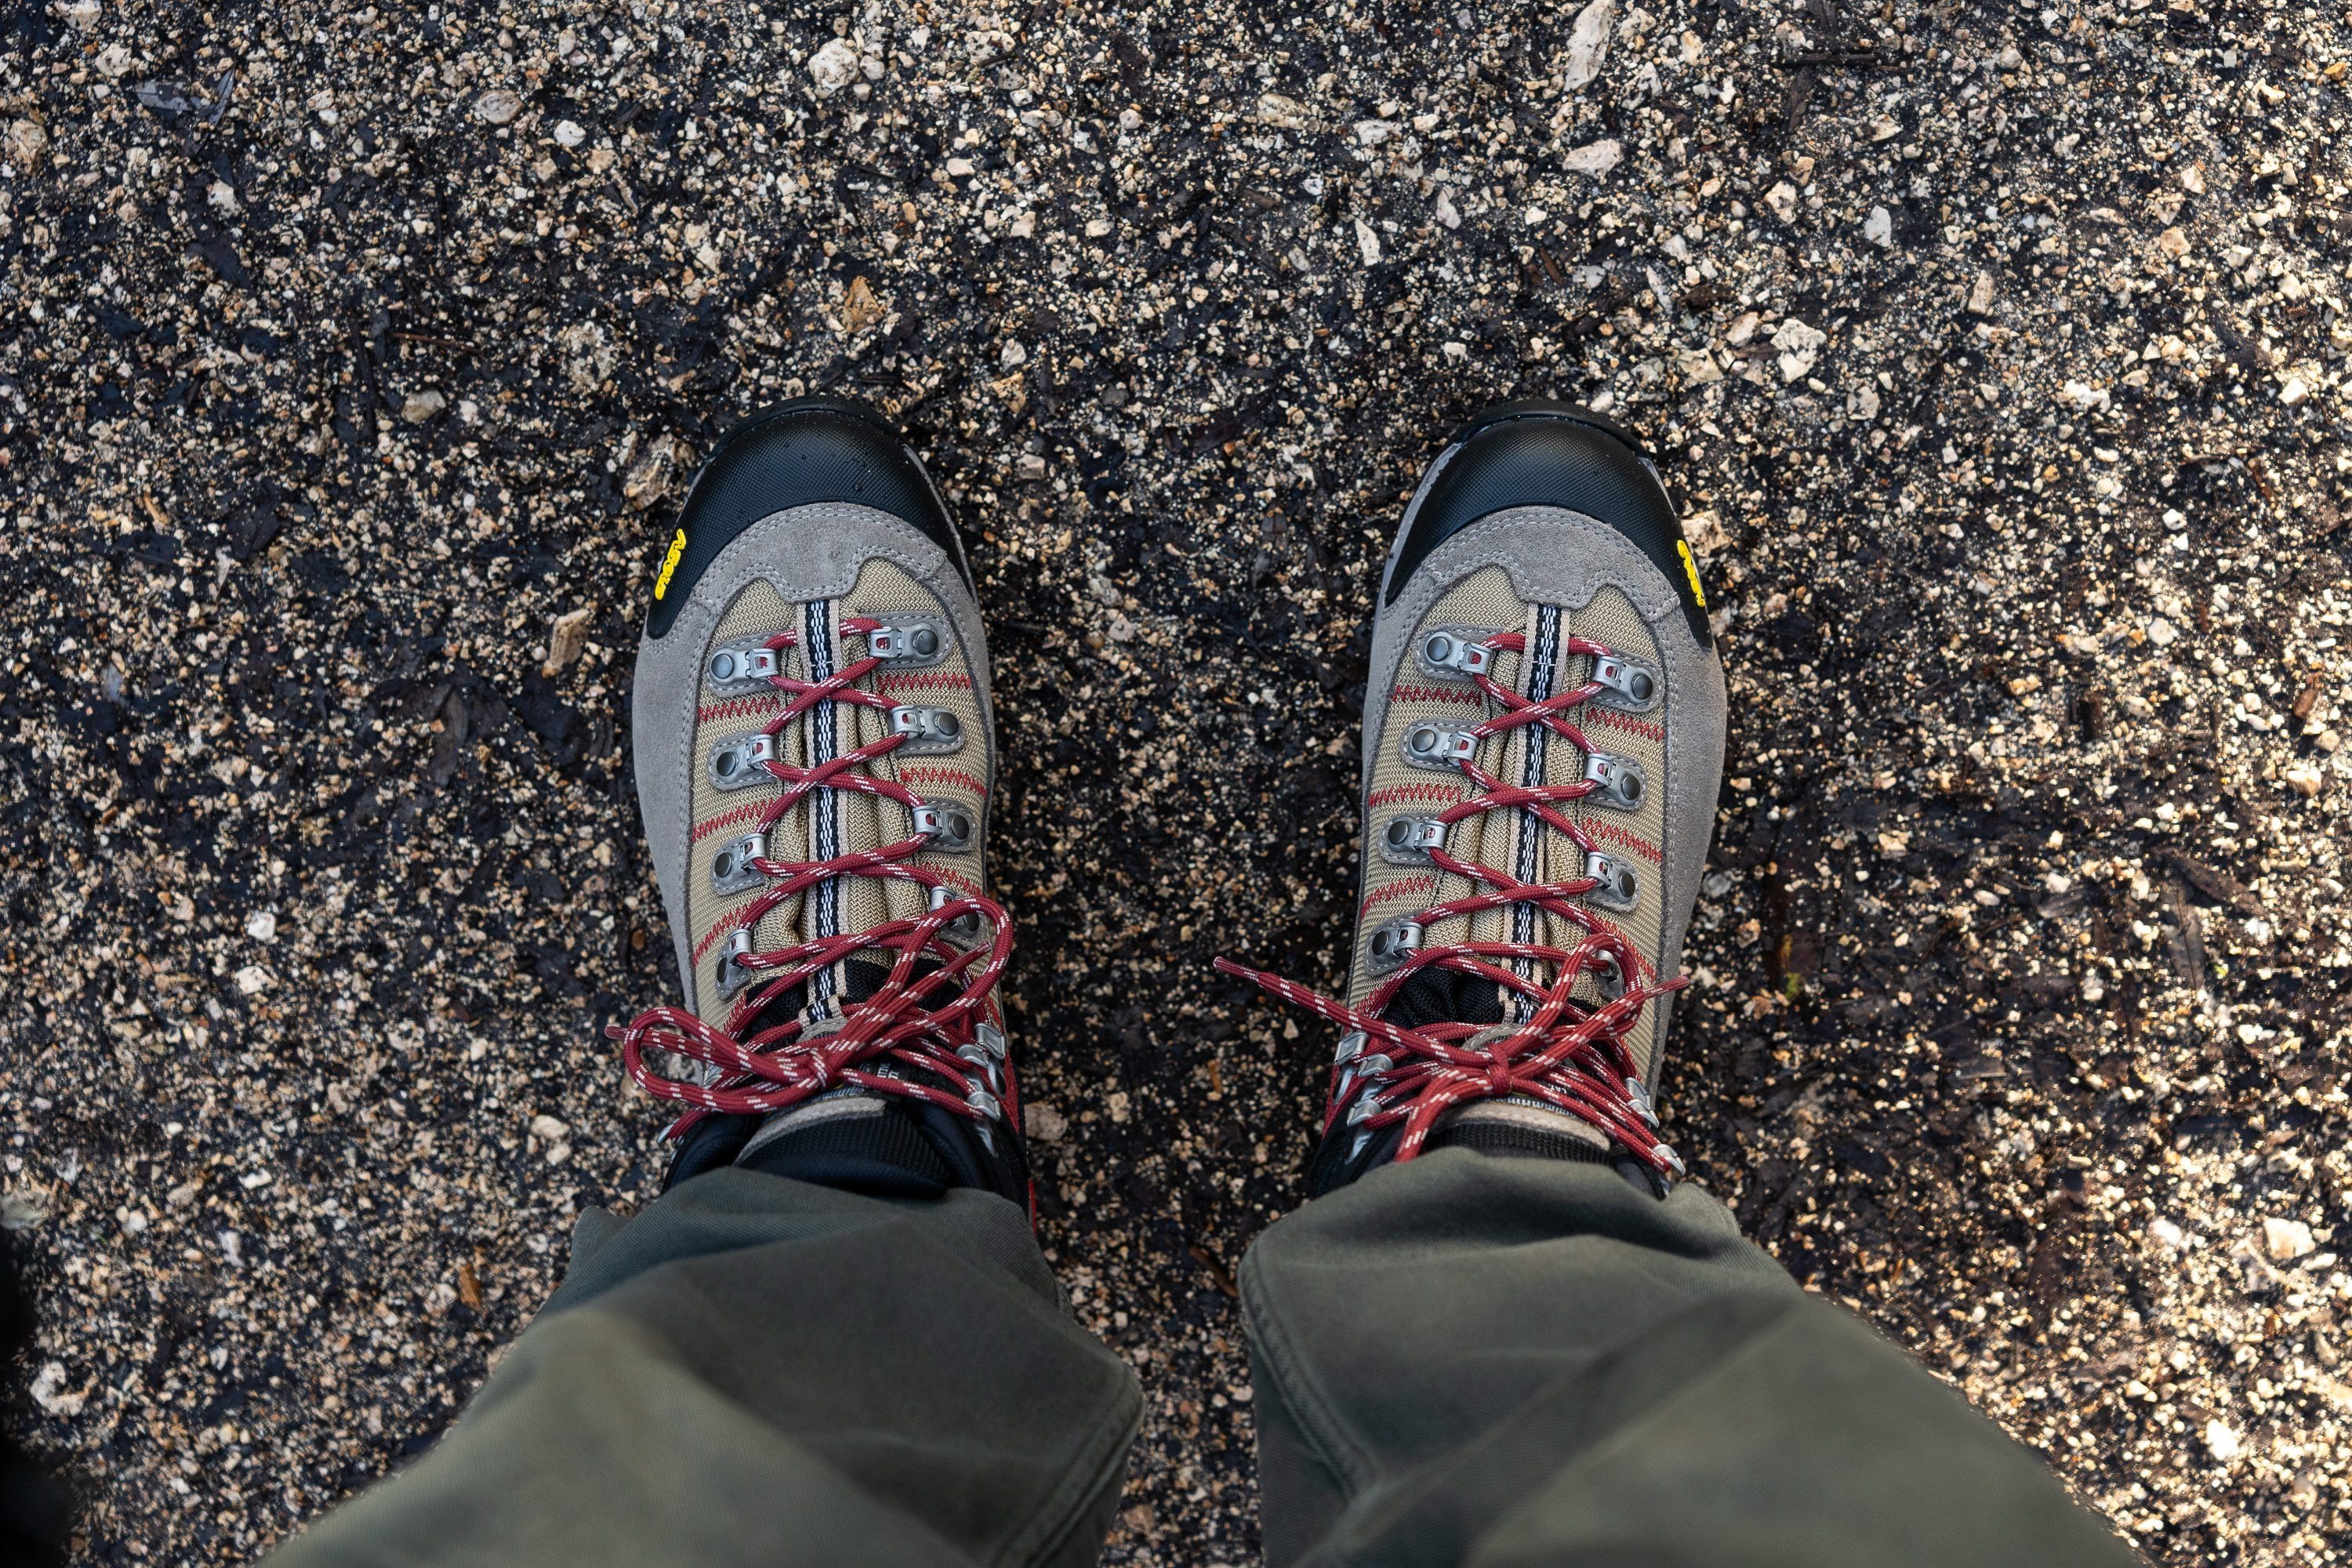 Calce de botas de senderismo impermeables vista desde la caña